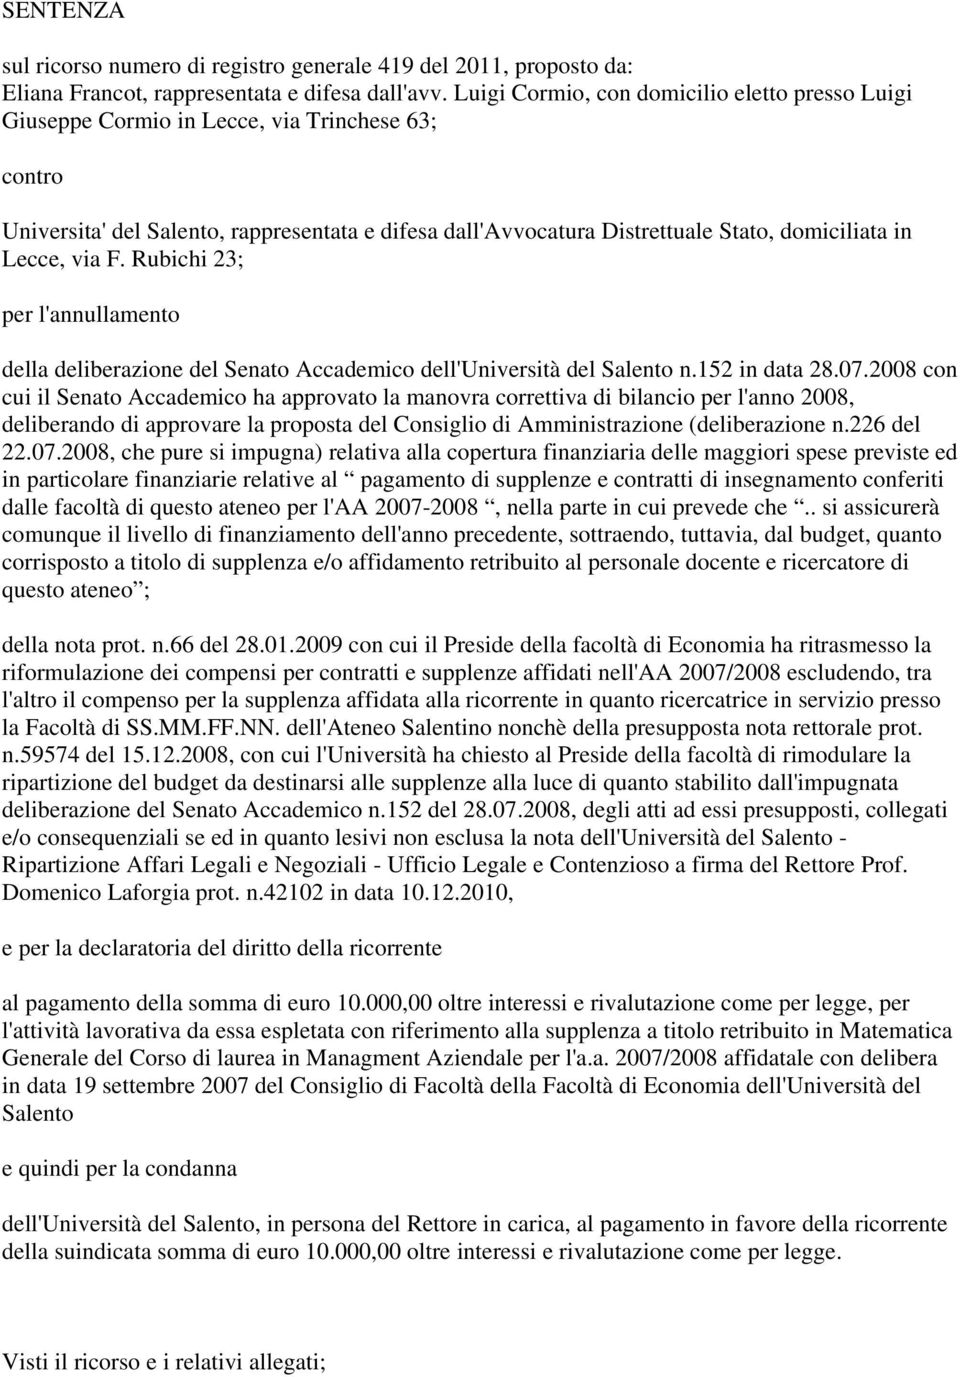 Lecce, via F. Rubichi 23; per l'annullamento della deliberazione del Senato Accademico dell'università del Salento n.152 in data 28.07.